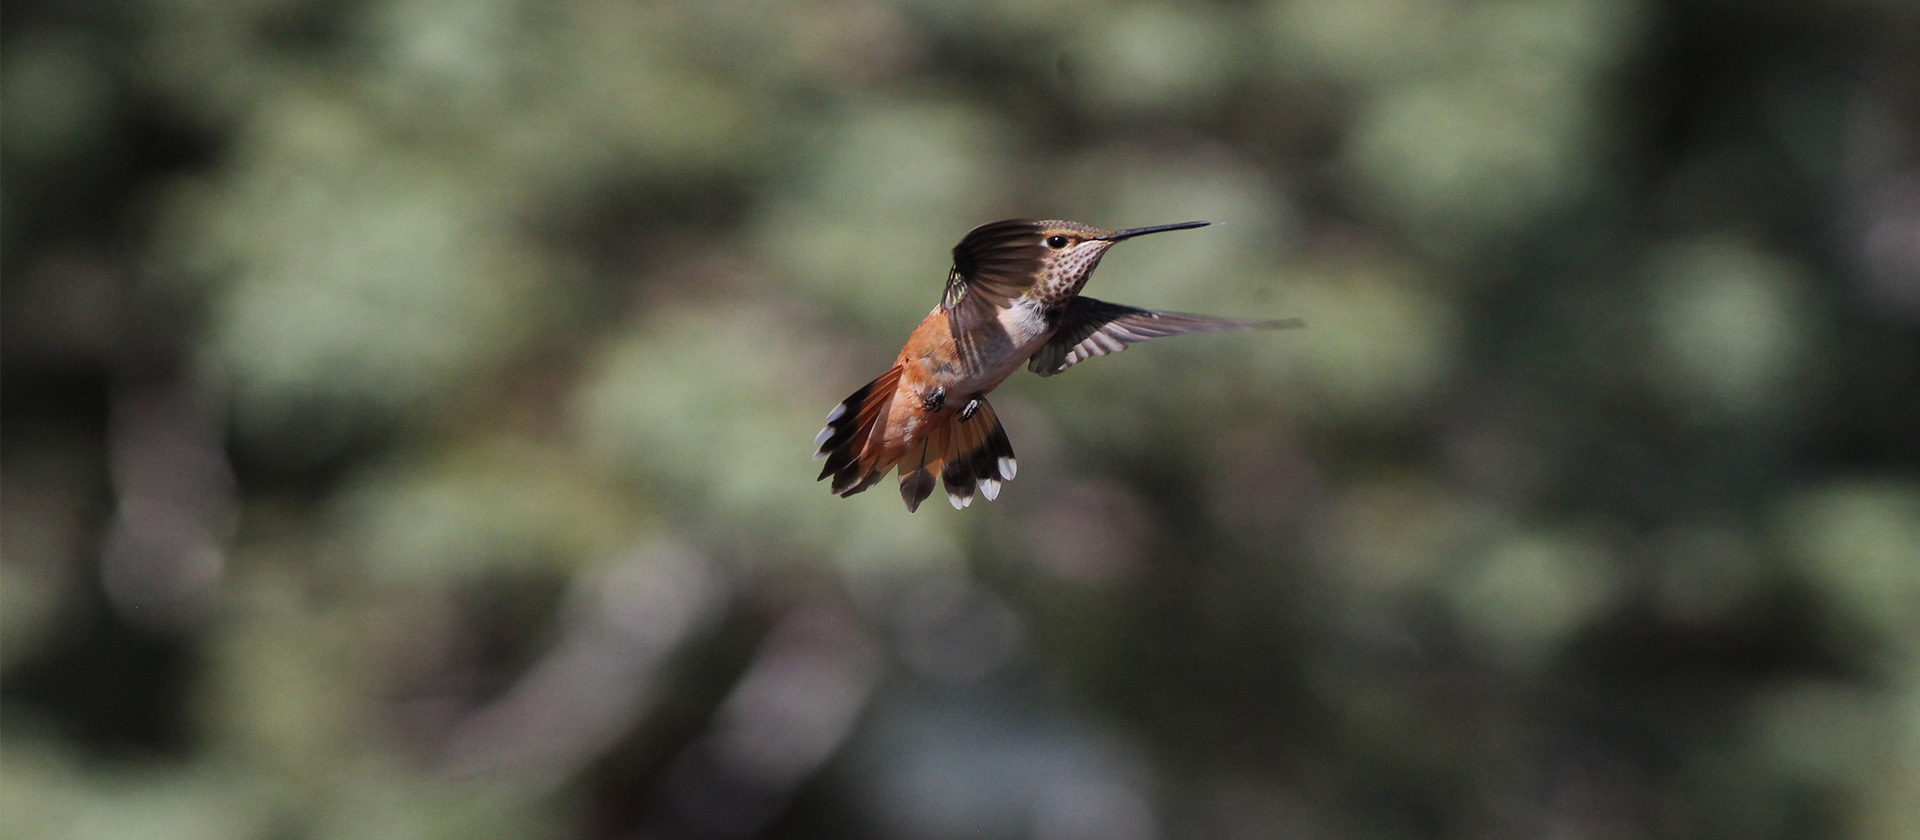 Hummingbirds focus of new online birding seminar Aug. 15-19